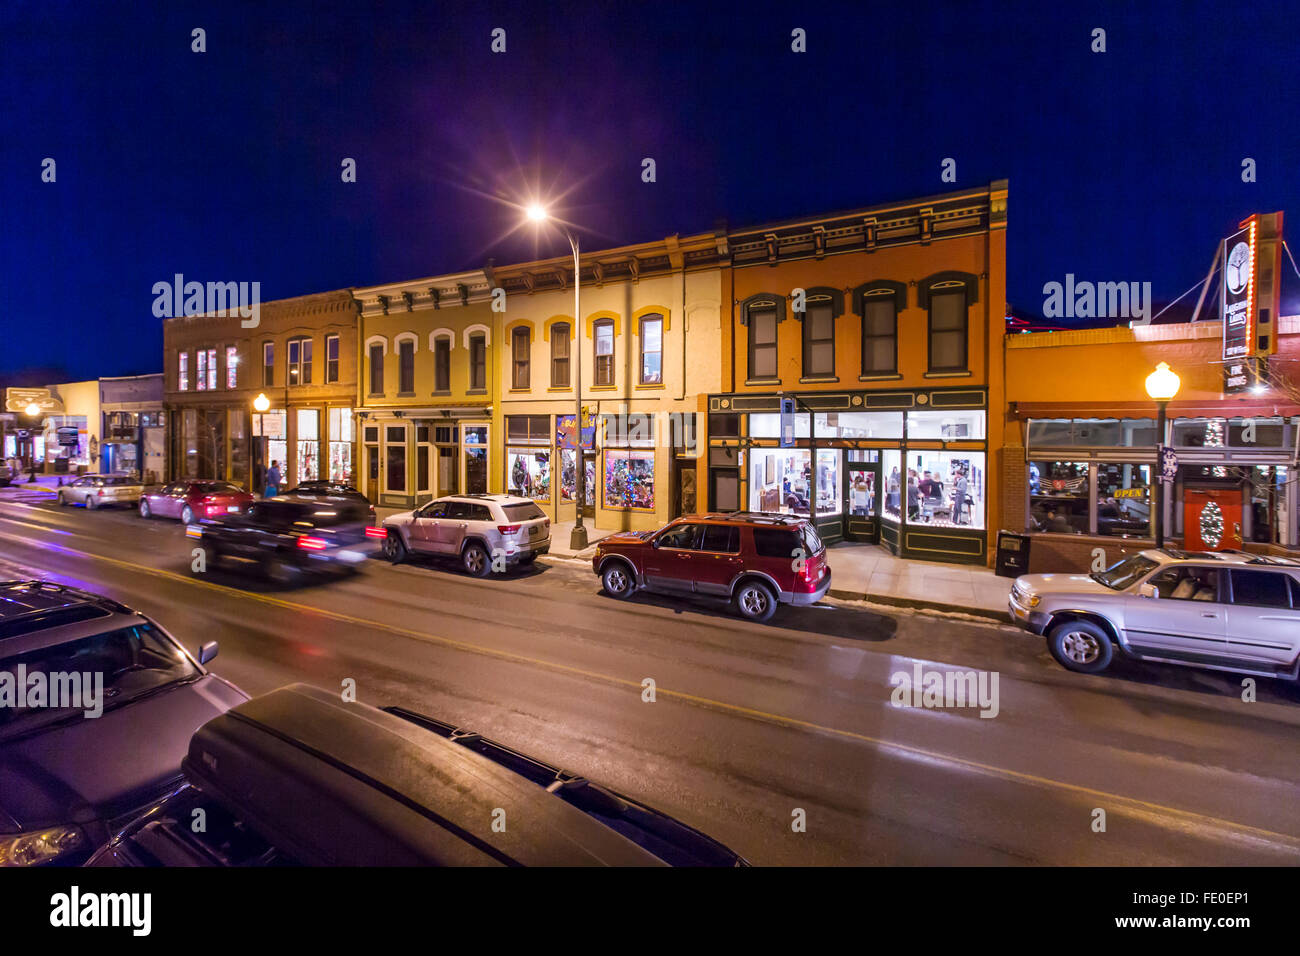 Vue de la nuit de boutiques et galeries d'art de petite ville de montagne de Salida, Colorado, USA Banque D'Images